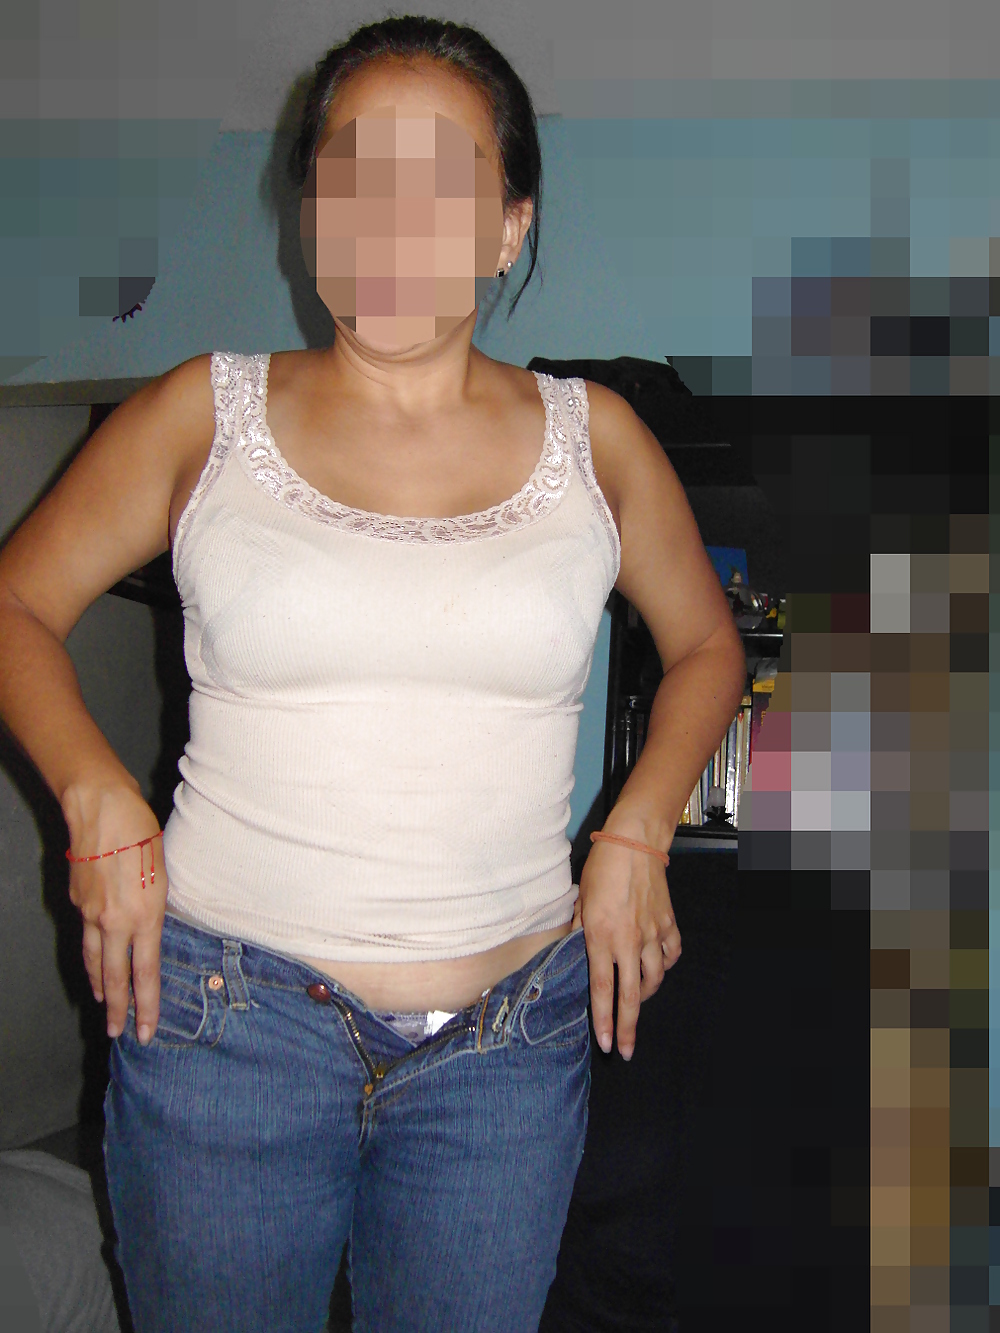 Latina mature transparent fullback panty #22354839